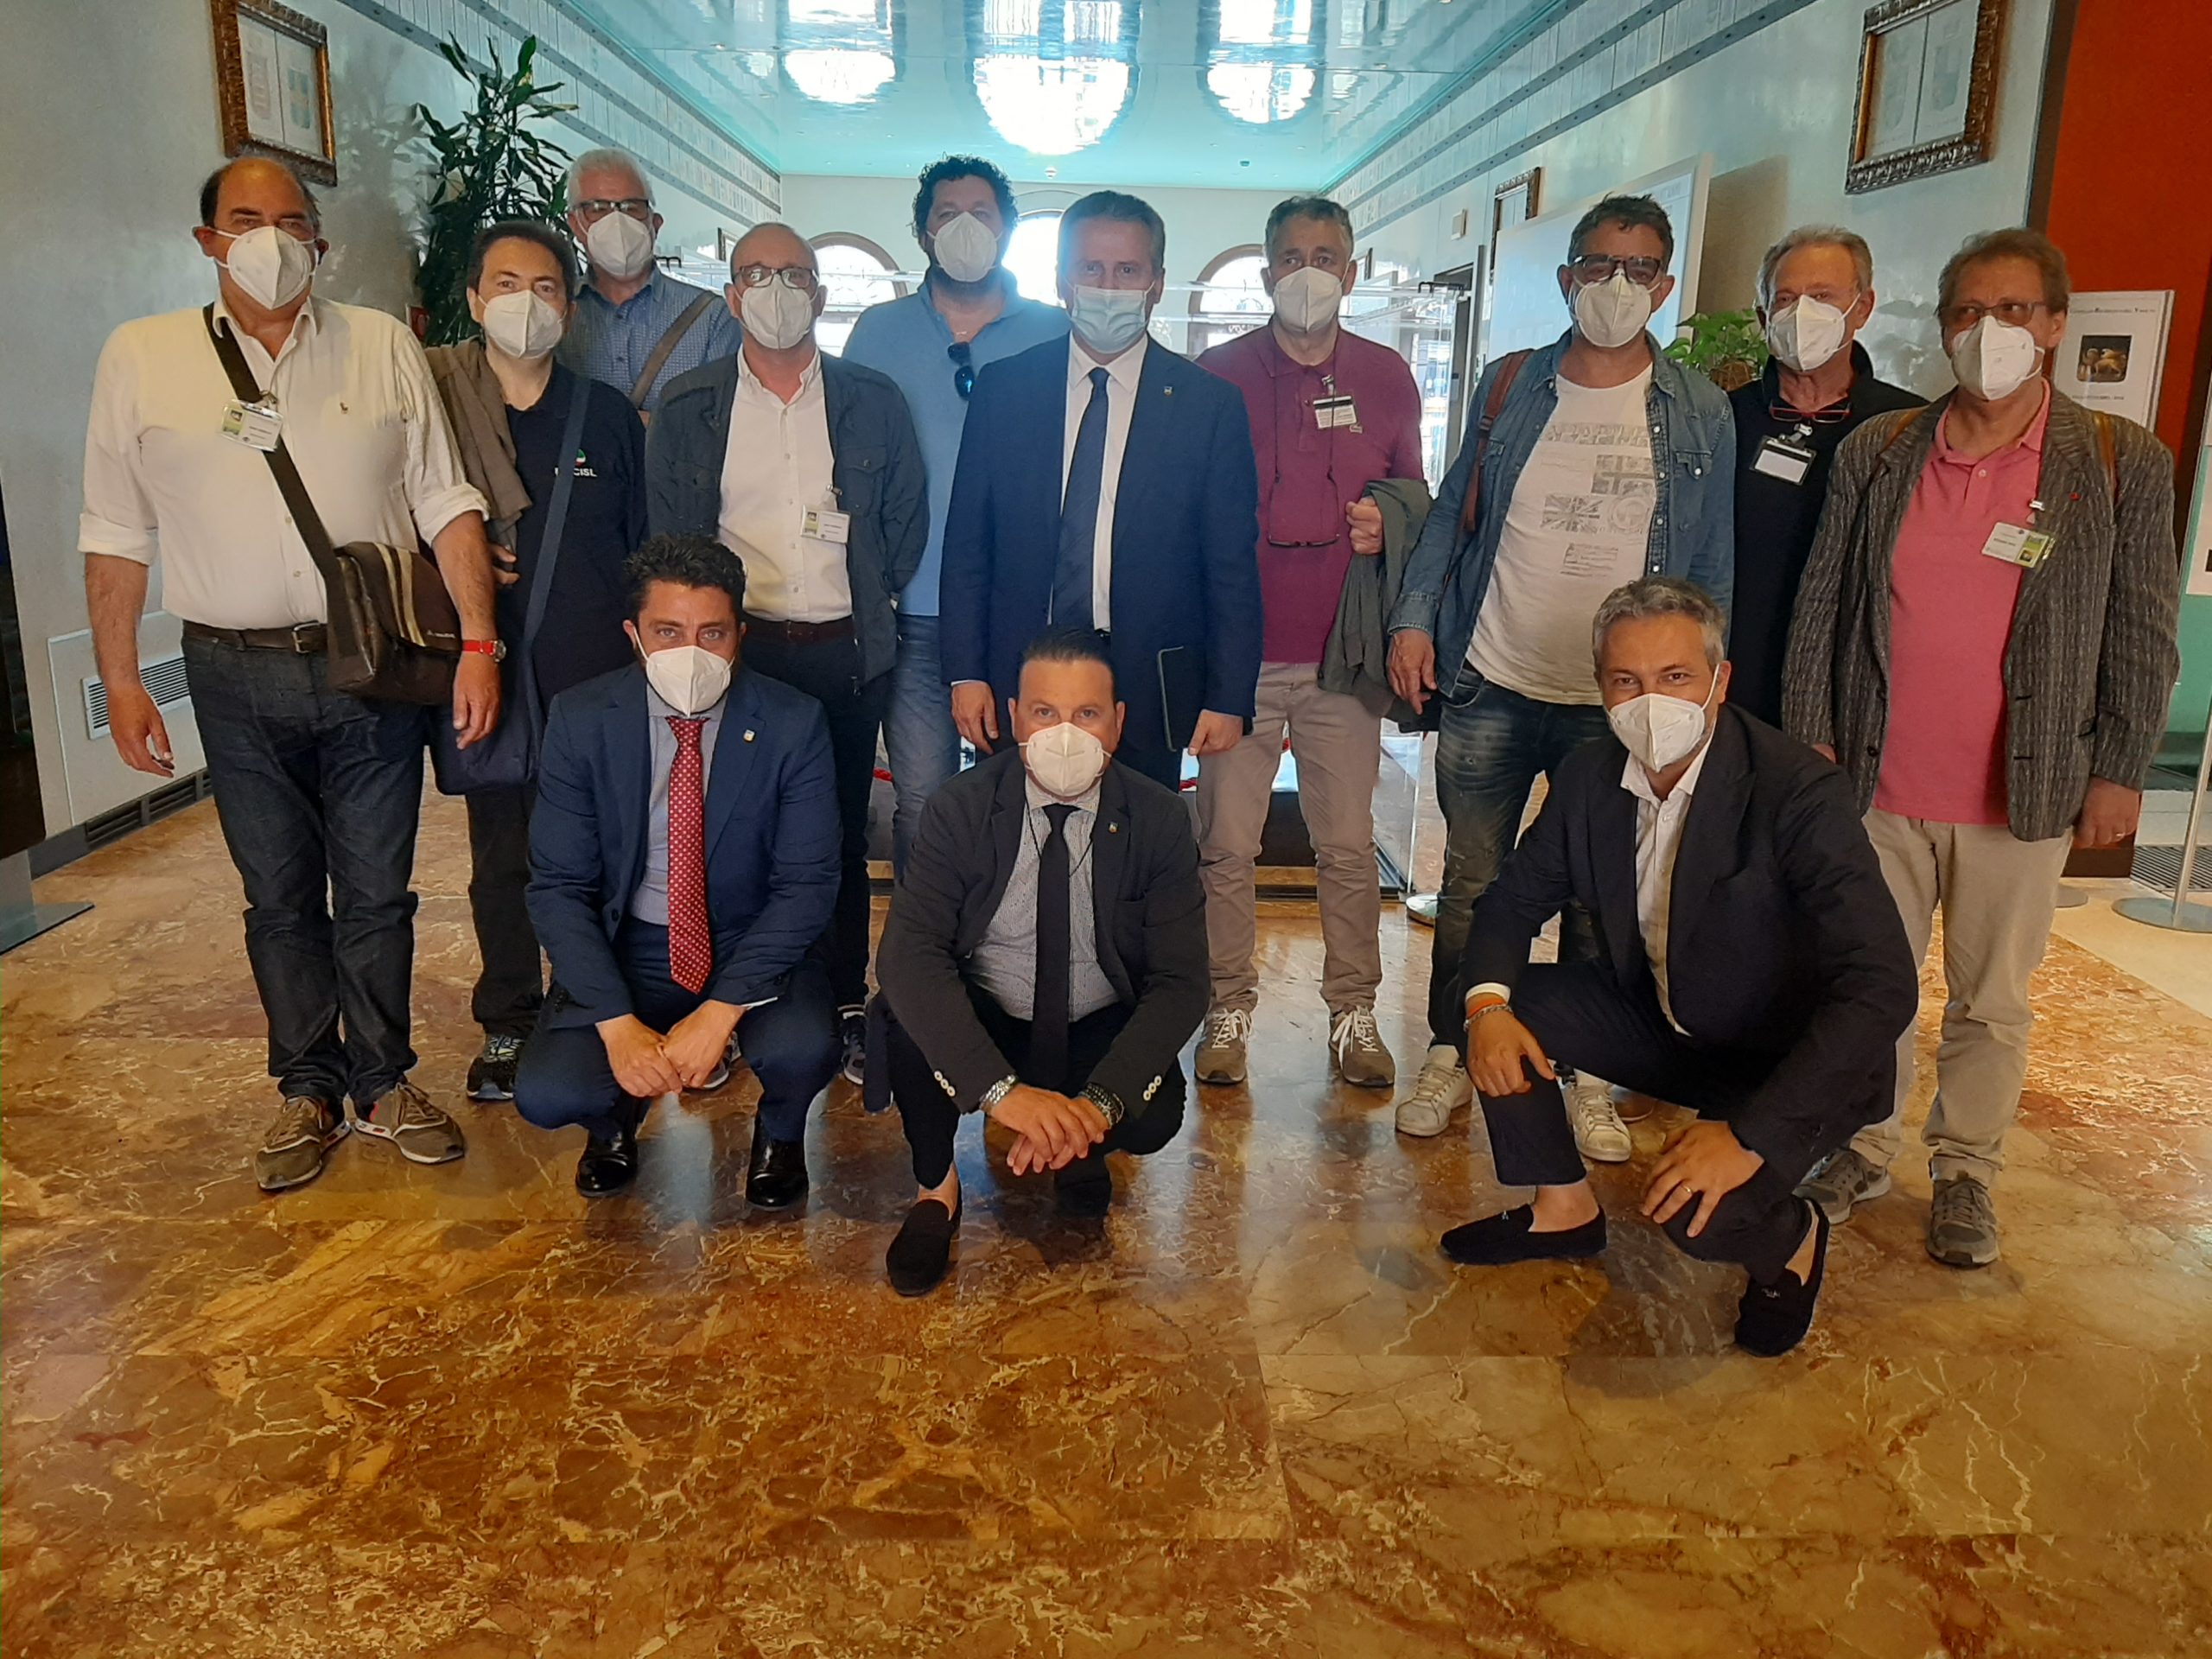 Consiglio regionale del Veneto riceve una delegazione di rappresentanti dei lavoratori di settore